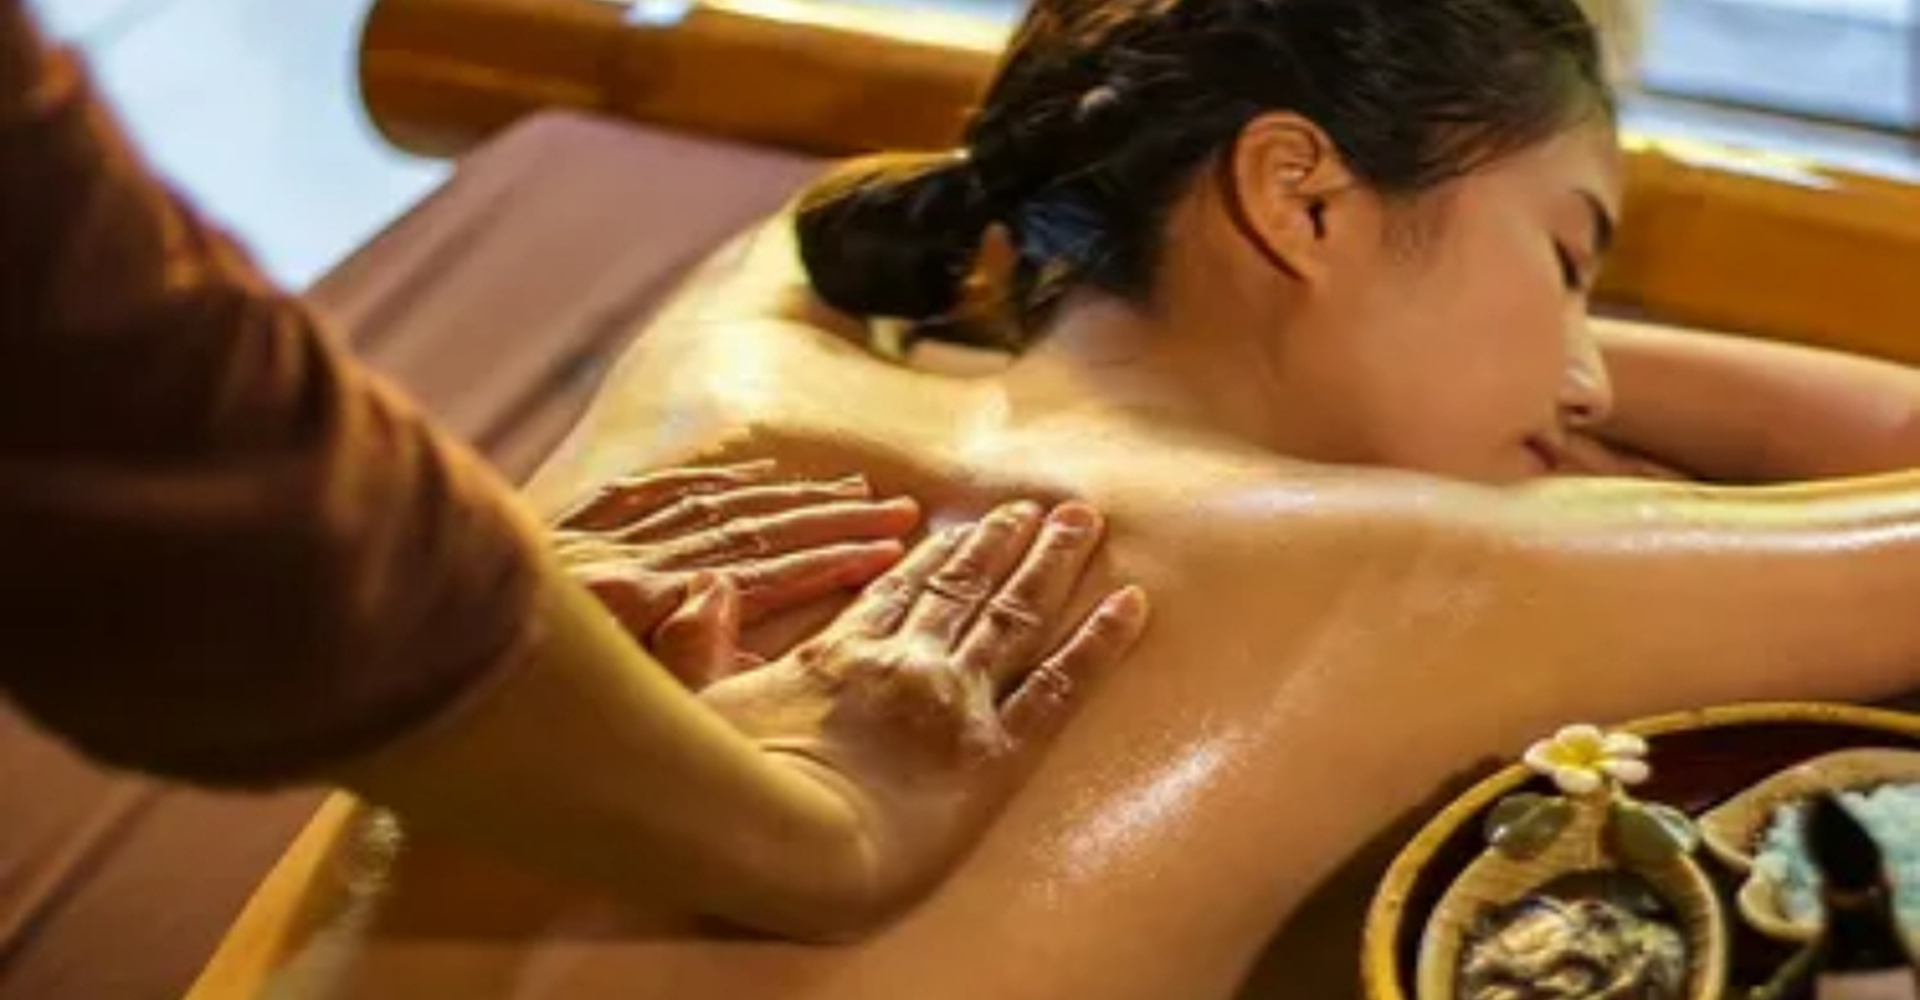 Hot massage video. Тайский Ойл массаж. Масляный массаж. Масляный массаж всего тела. Тайский массаж маслом всего тела.